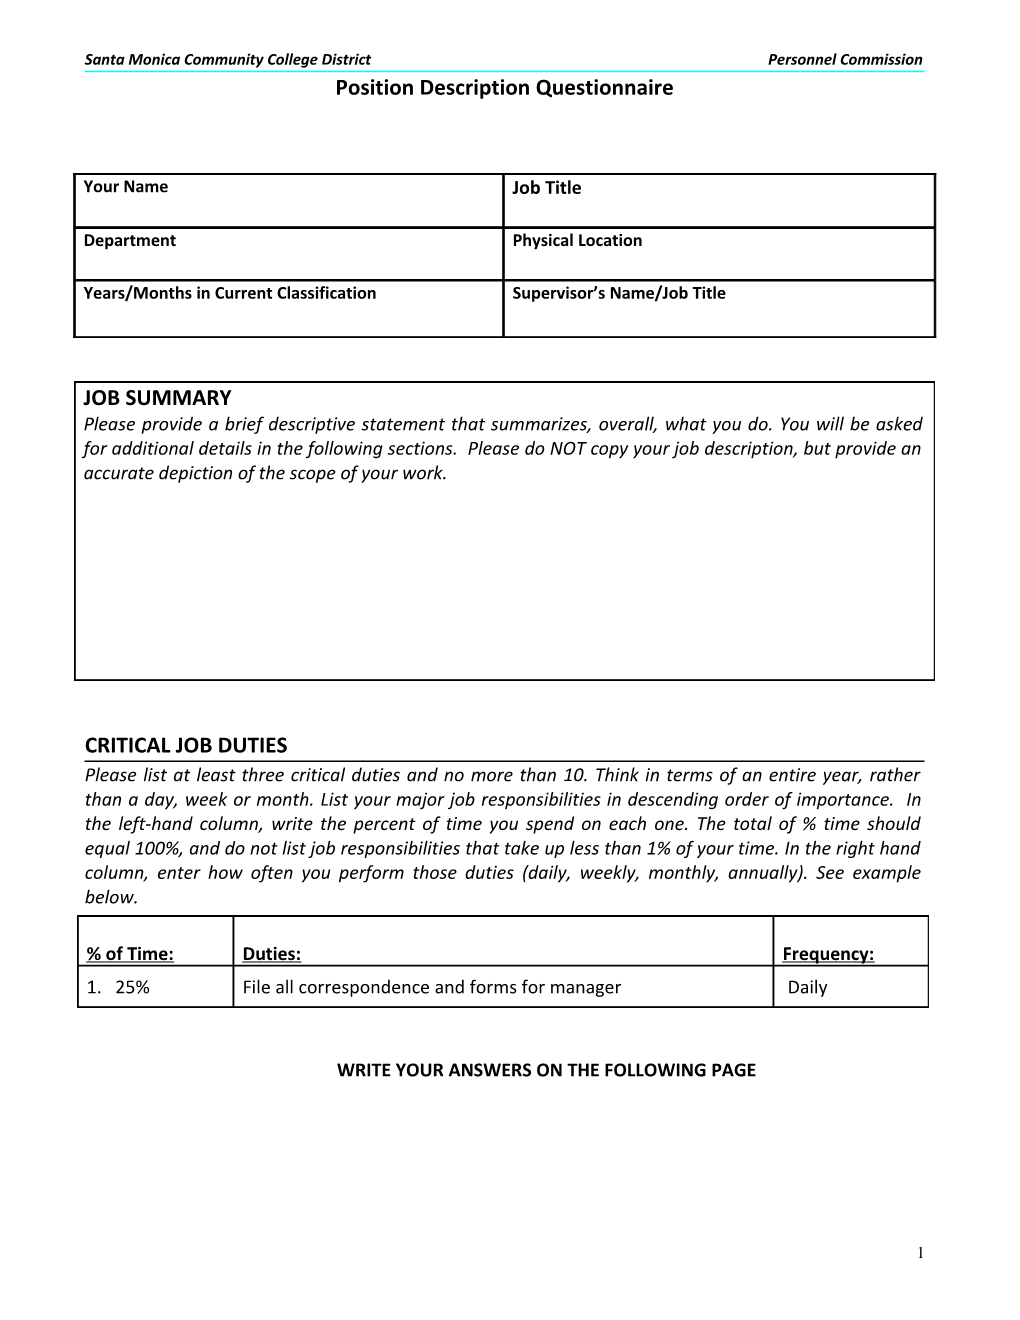 Position Description Questionnaire s1